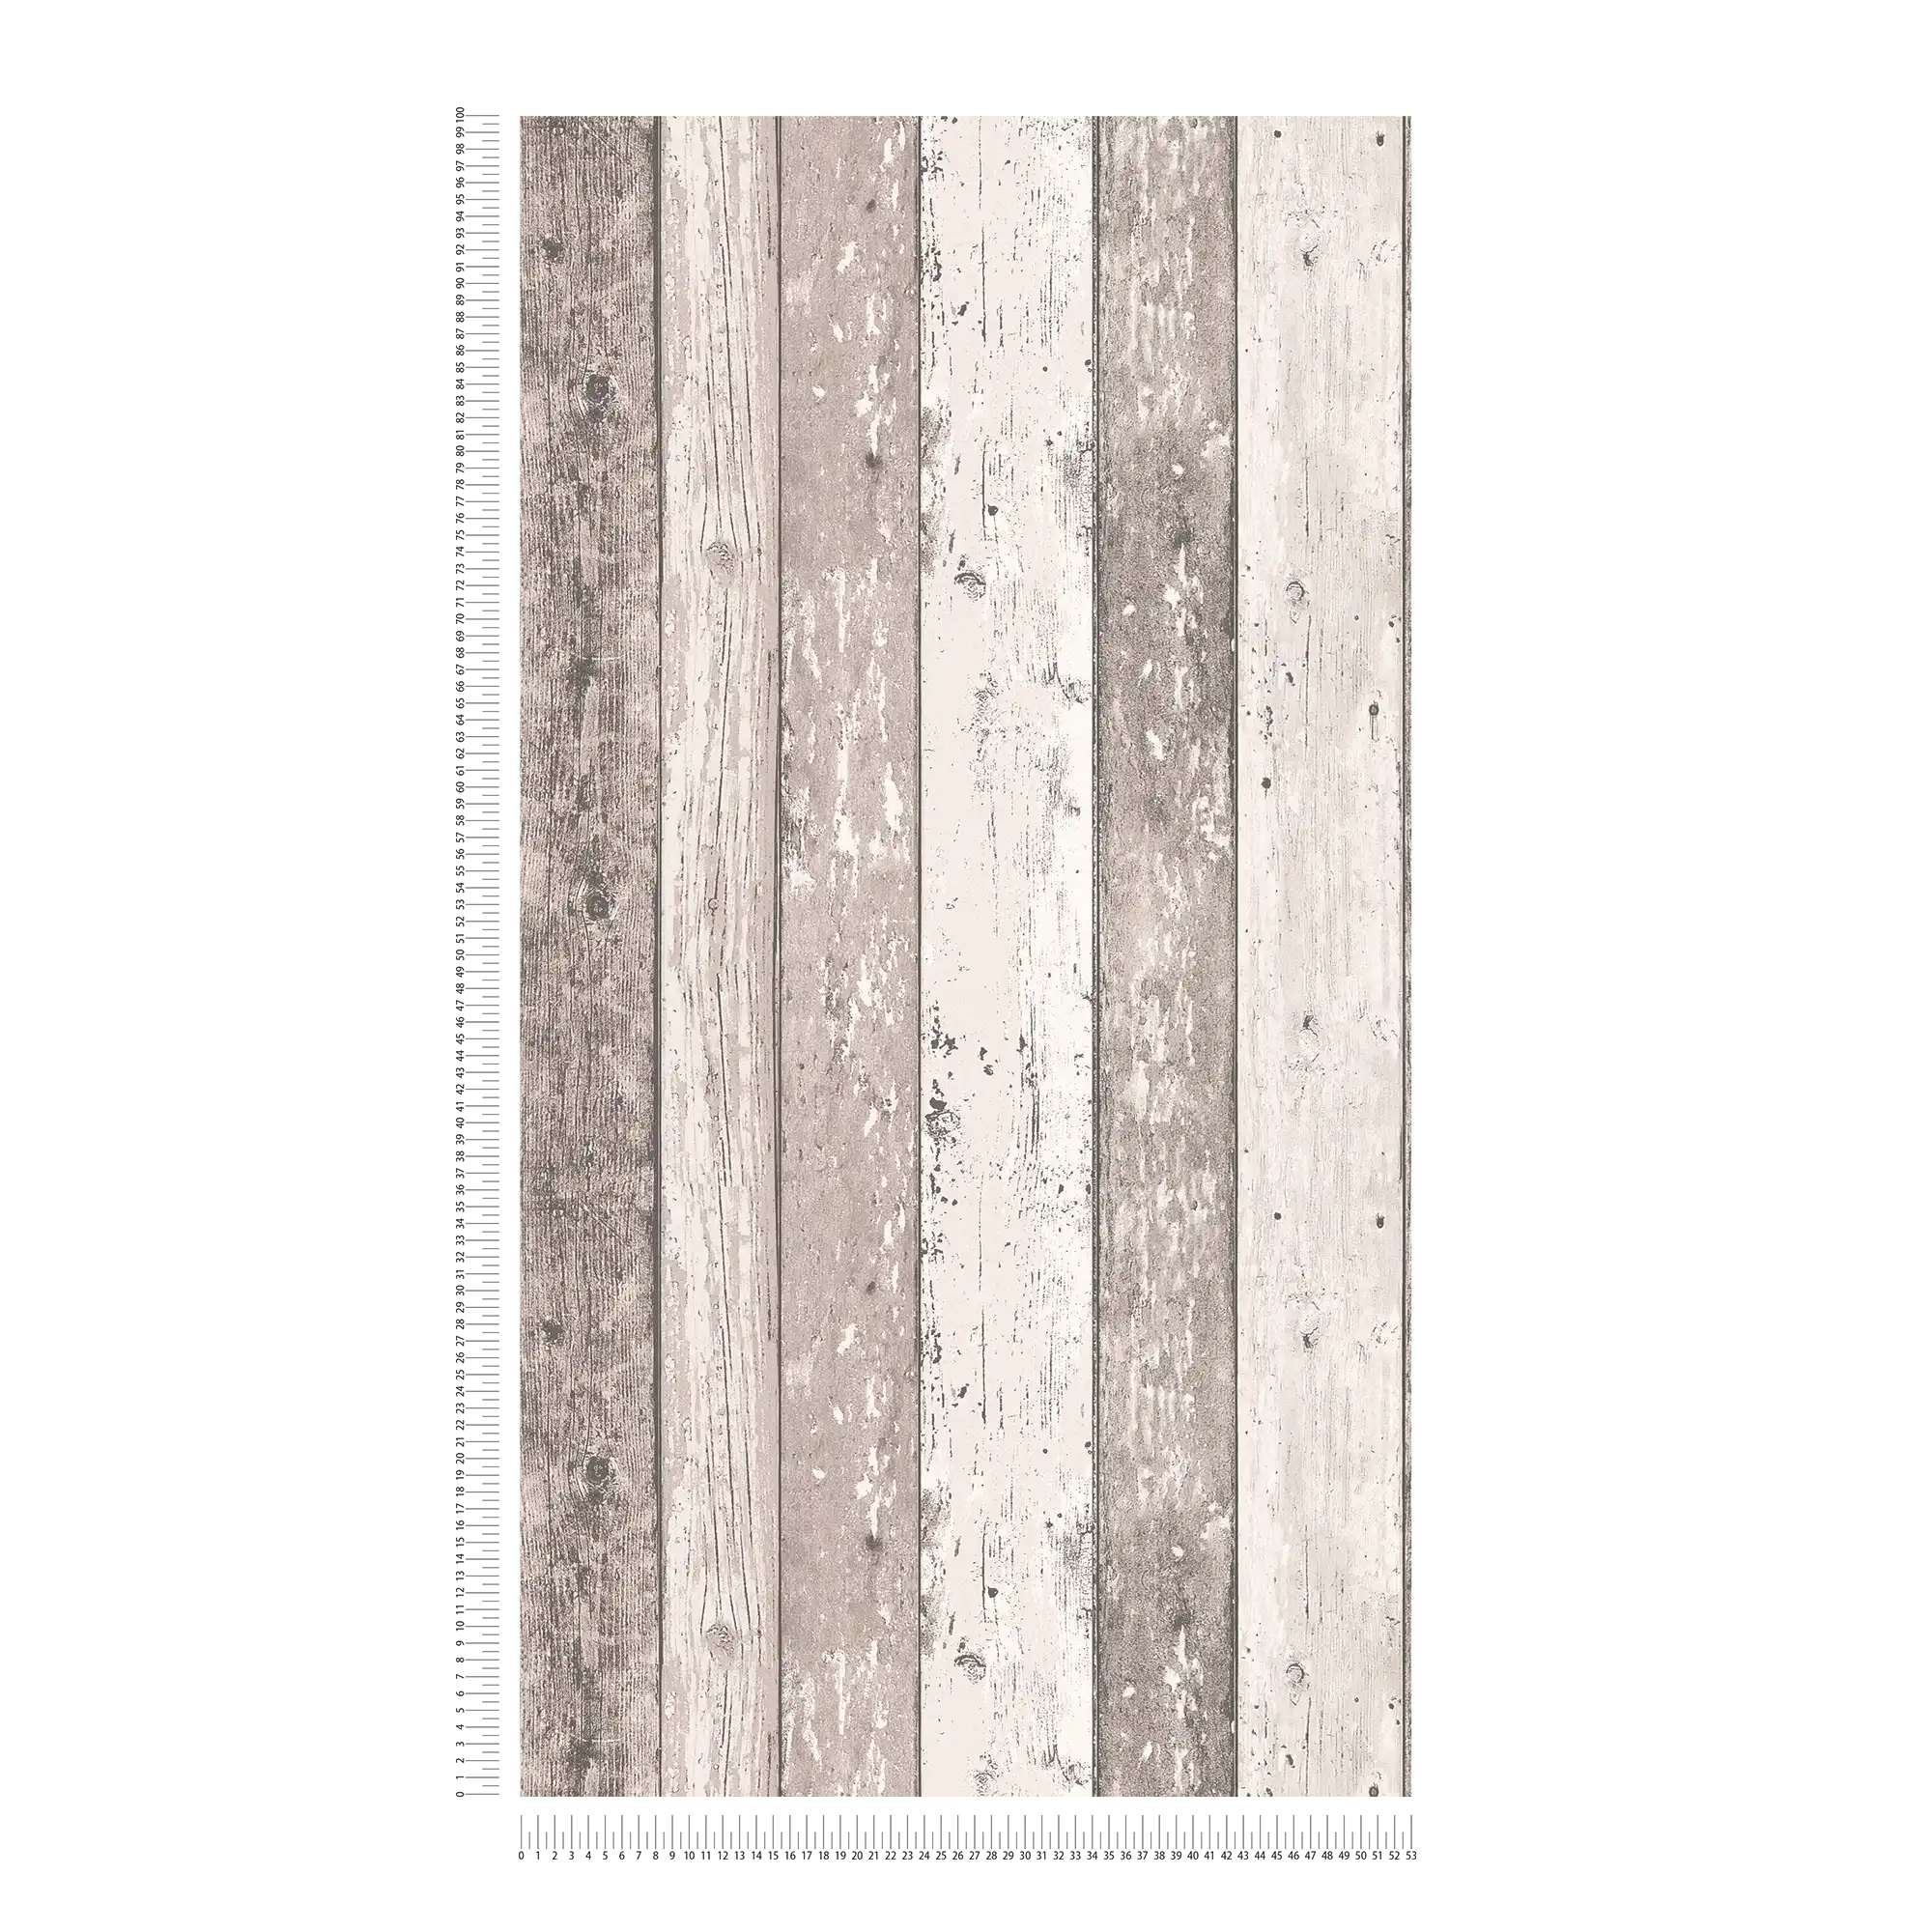             Papel pintado de tablones con óptica de madera en aspecto usado - marrón, crema
        